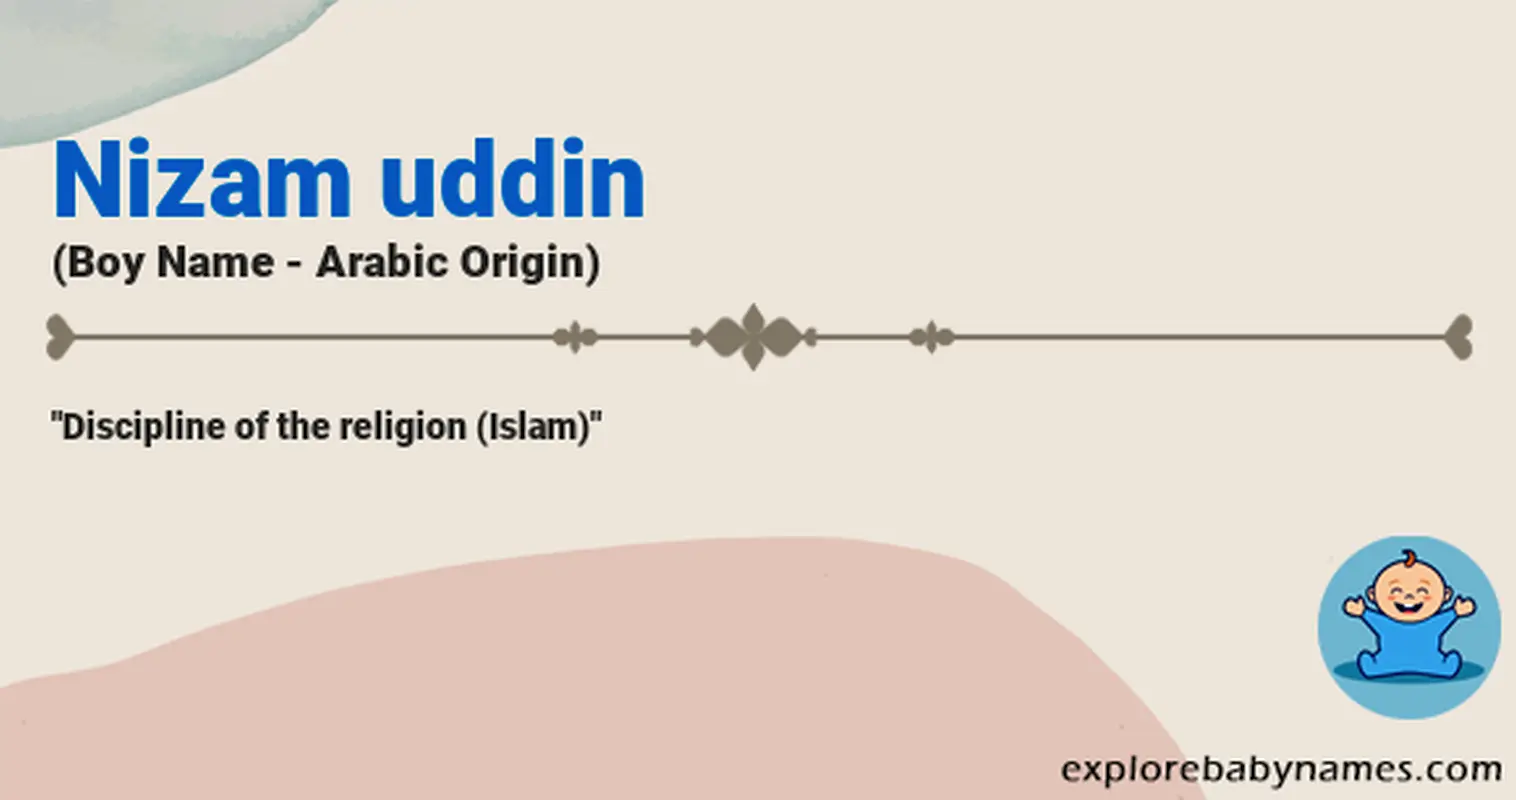 Meaning of Nizam uddin